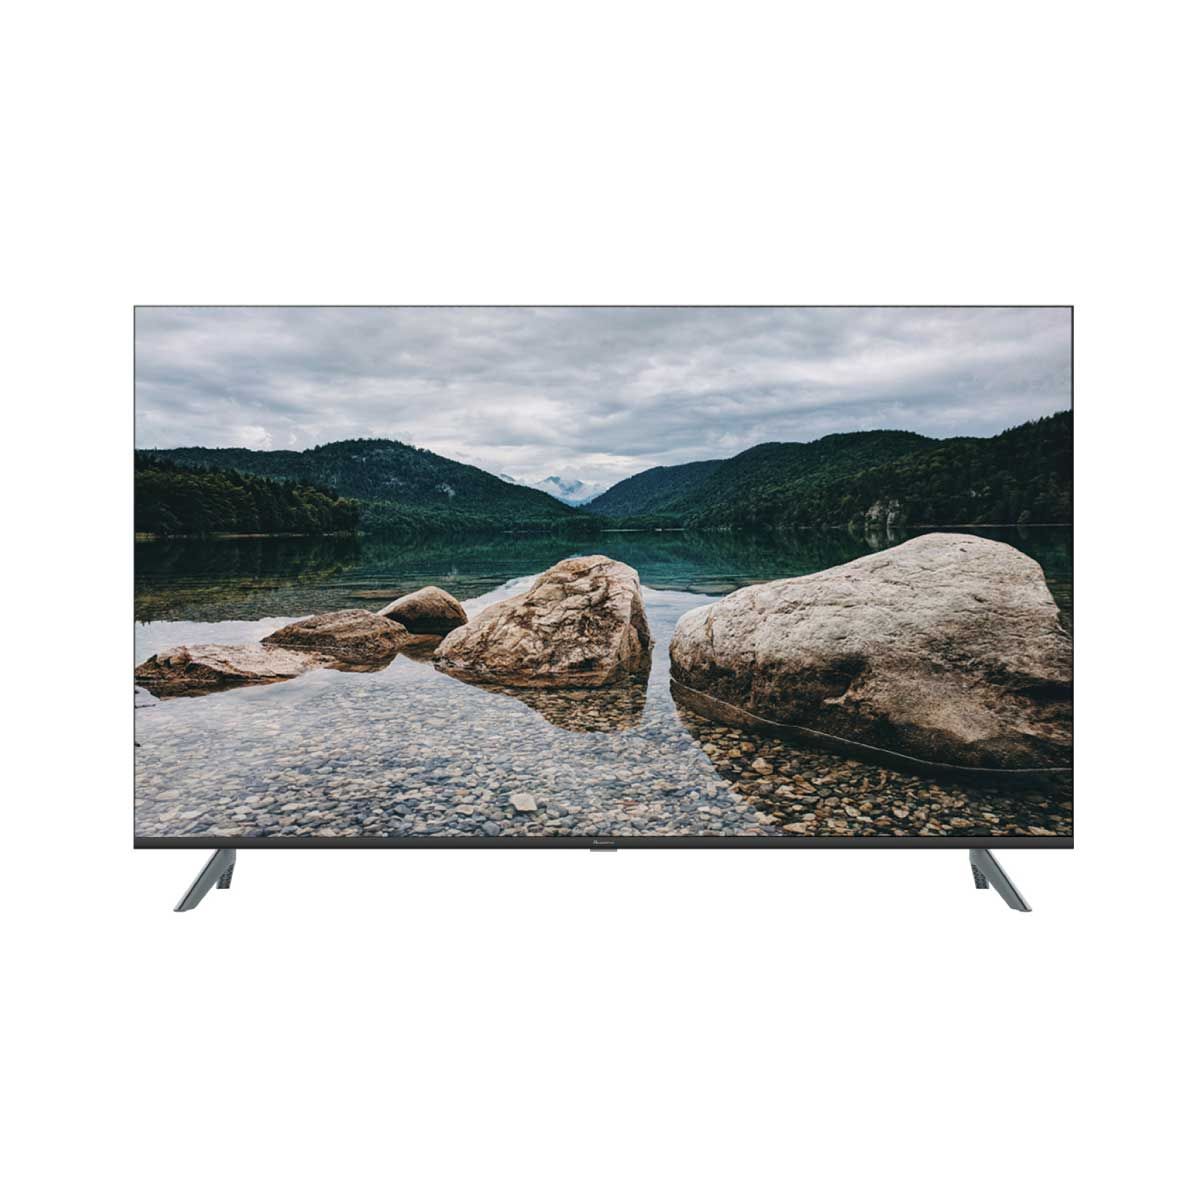 ACONATIC  LED Google TV 4K รุ่น 55US700AN  Google TV 55นิ้ว Frameless Design